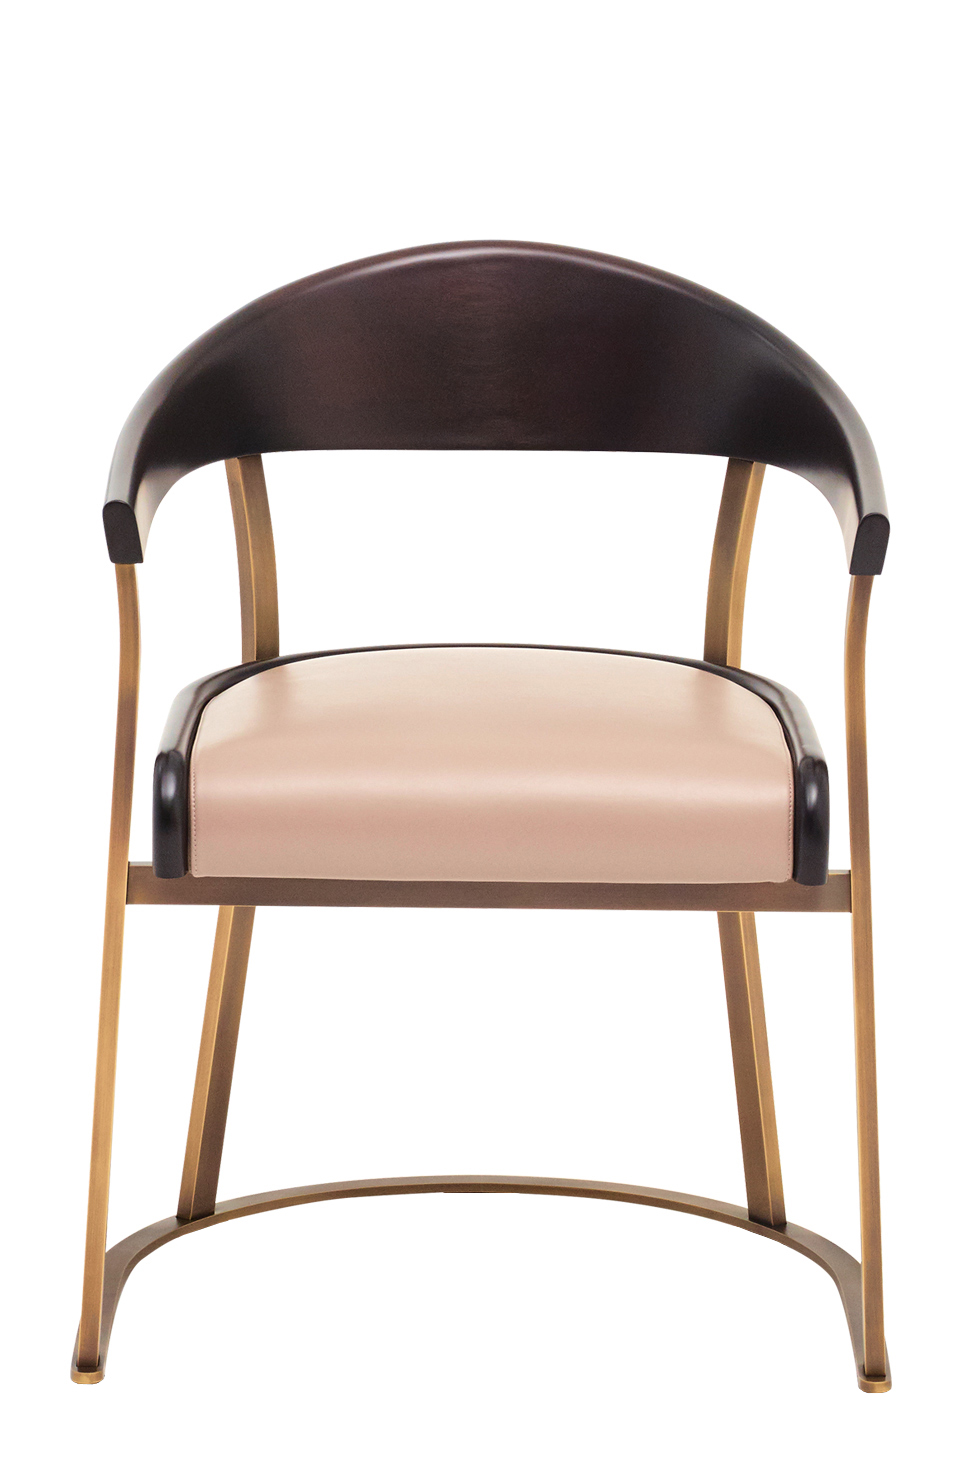 Rachele&amp;nbsp;— бронзовый стул с подлокотниками, с деревянной или кожаной спинкой и кожаным сиденьем из каталога Promemoria | Promemoria